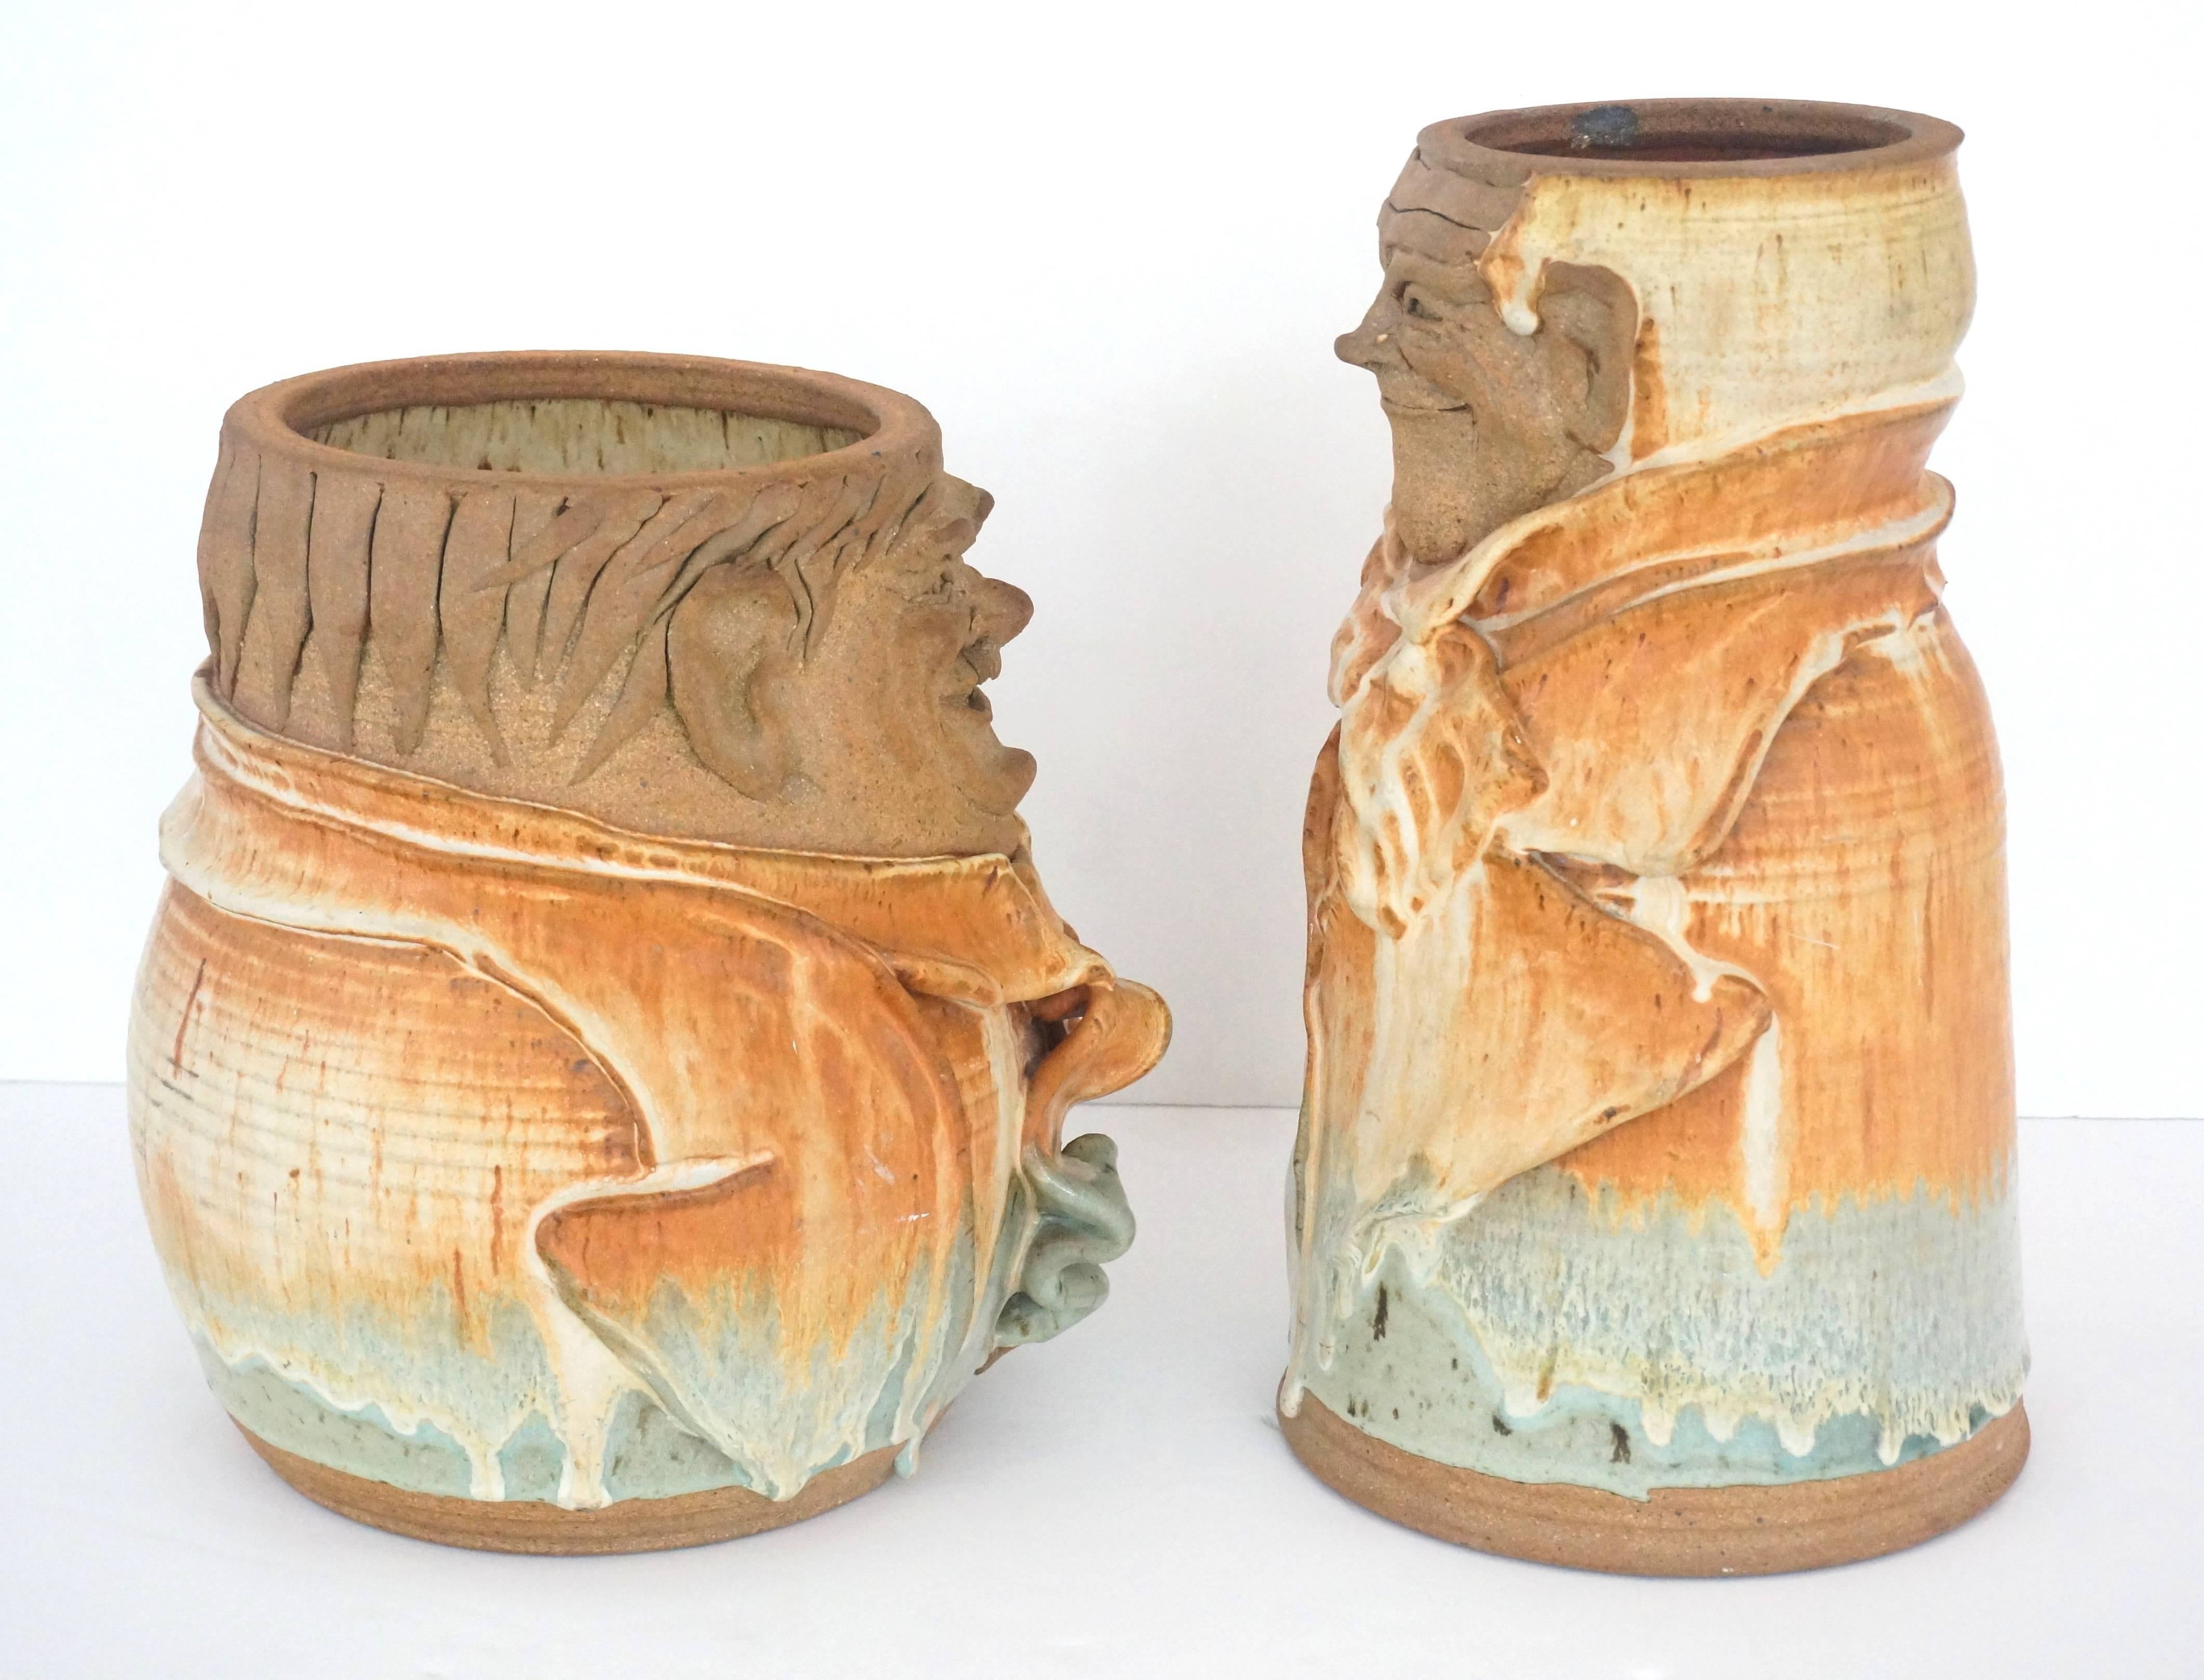 Cet ensemble de vases en poterie artisanale en terre cuite reprend les formes stylisées des acteurs de cinéma américains Laurel et Hardy.

Note : Chaque pièce porte l'inscription 